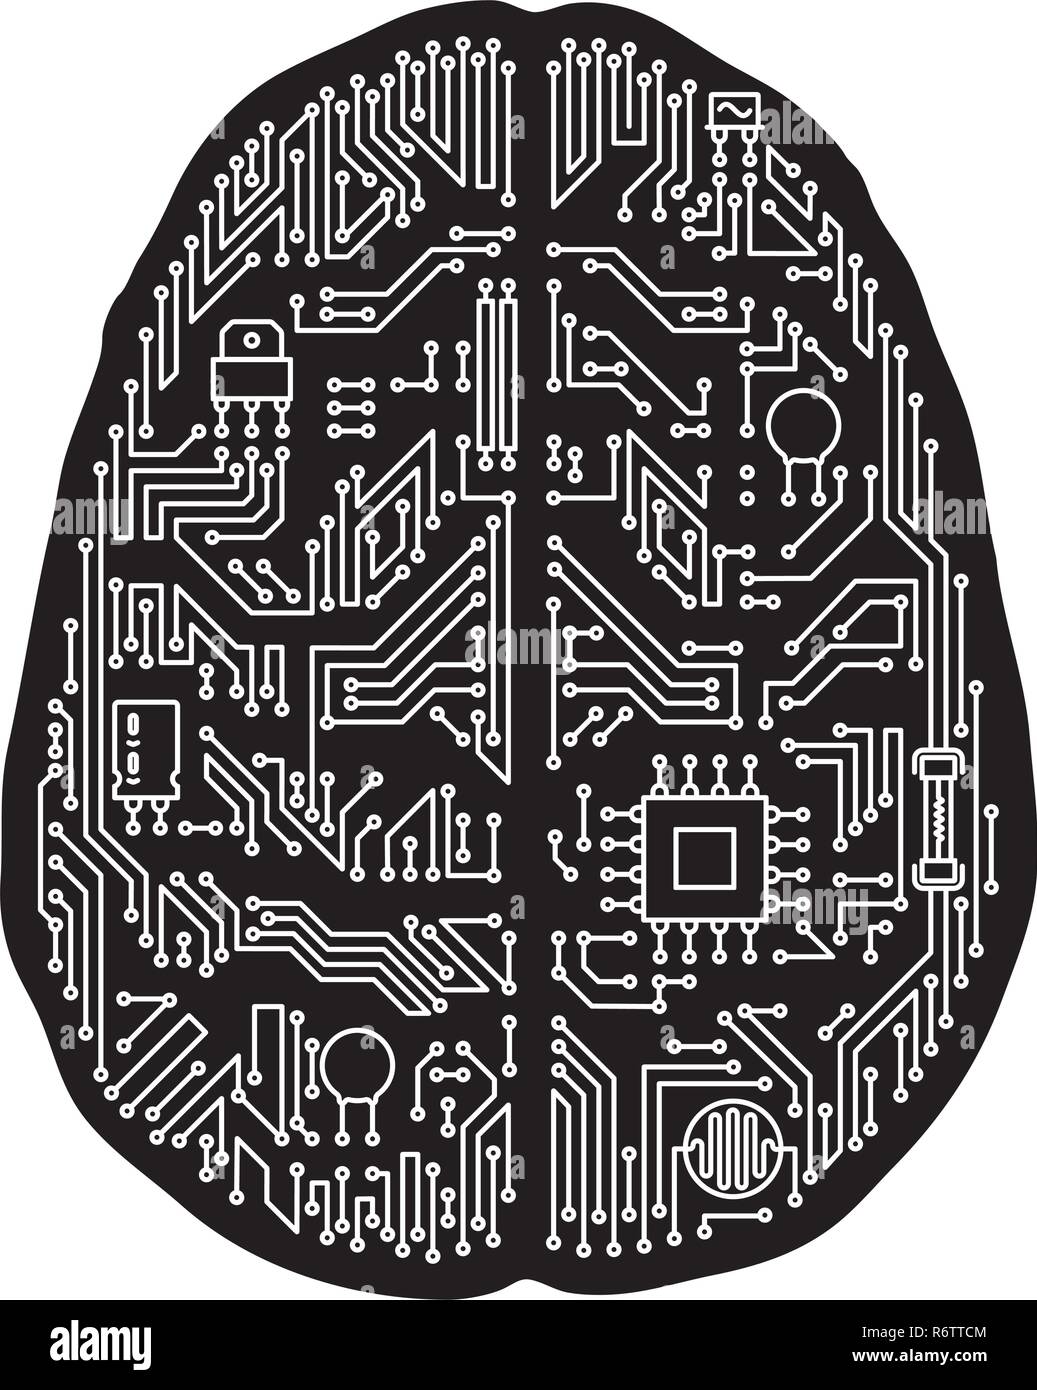 Hauptplatine des menschlichen Gehirns geformt isoliert Vector Illustration. Schwarze und weiße künstliche Intelligenz und Technologie Konzept. Stock Vektor